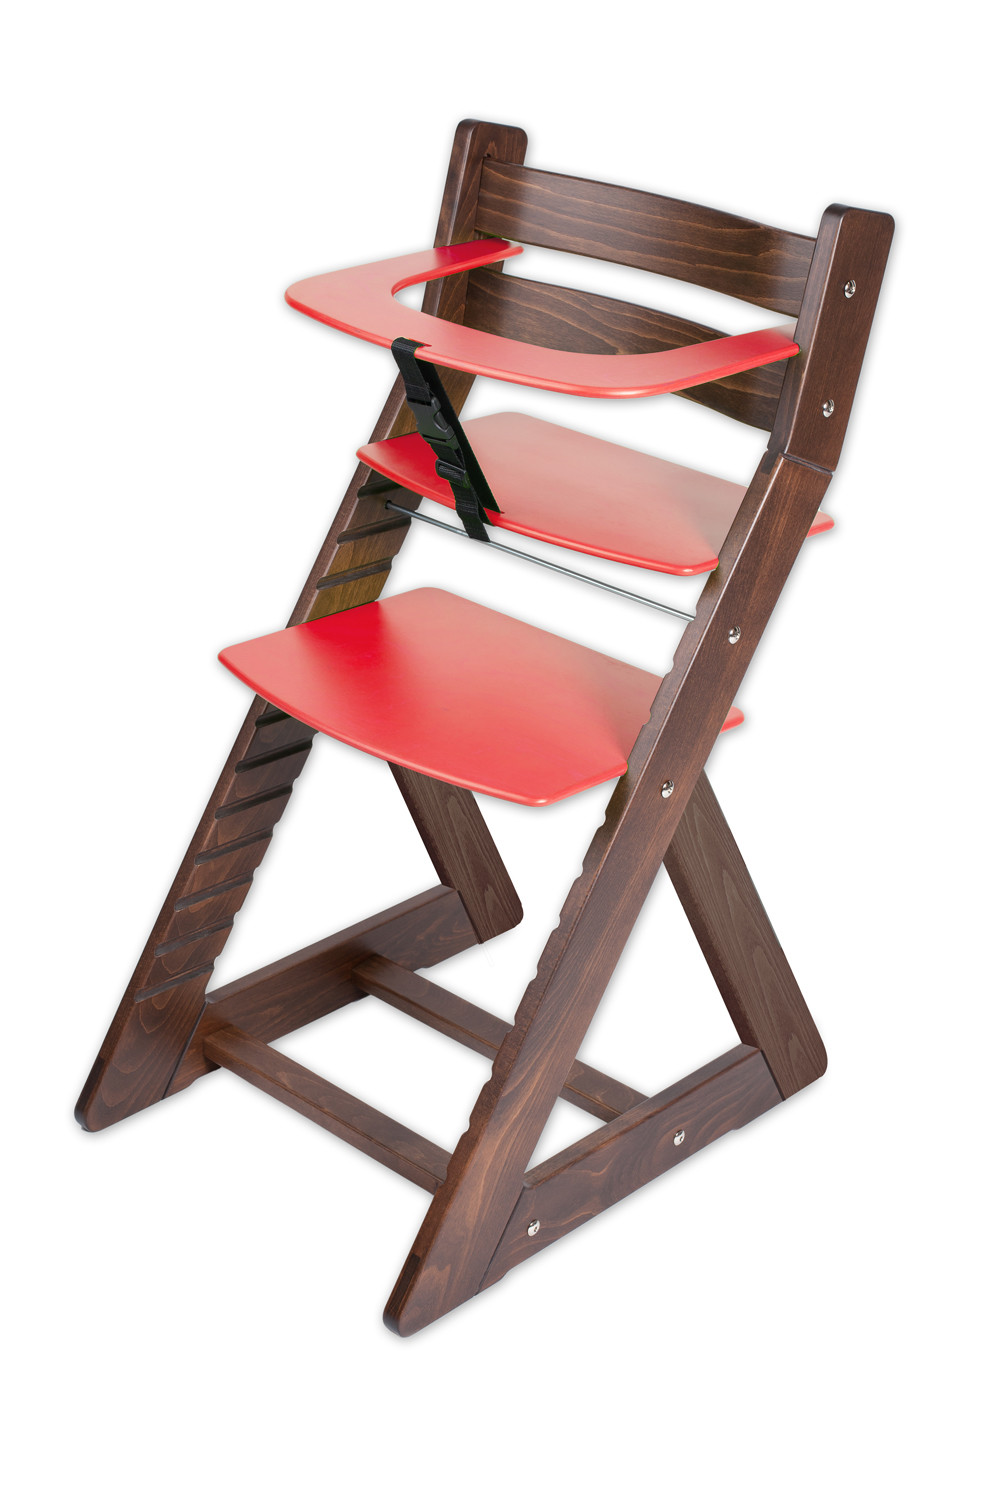 Hajdalánek Rostoucí židle ANETA - malý pultík (ořech, červená)